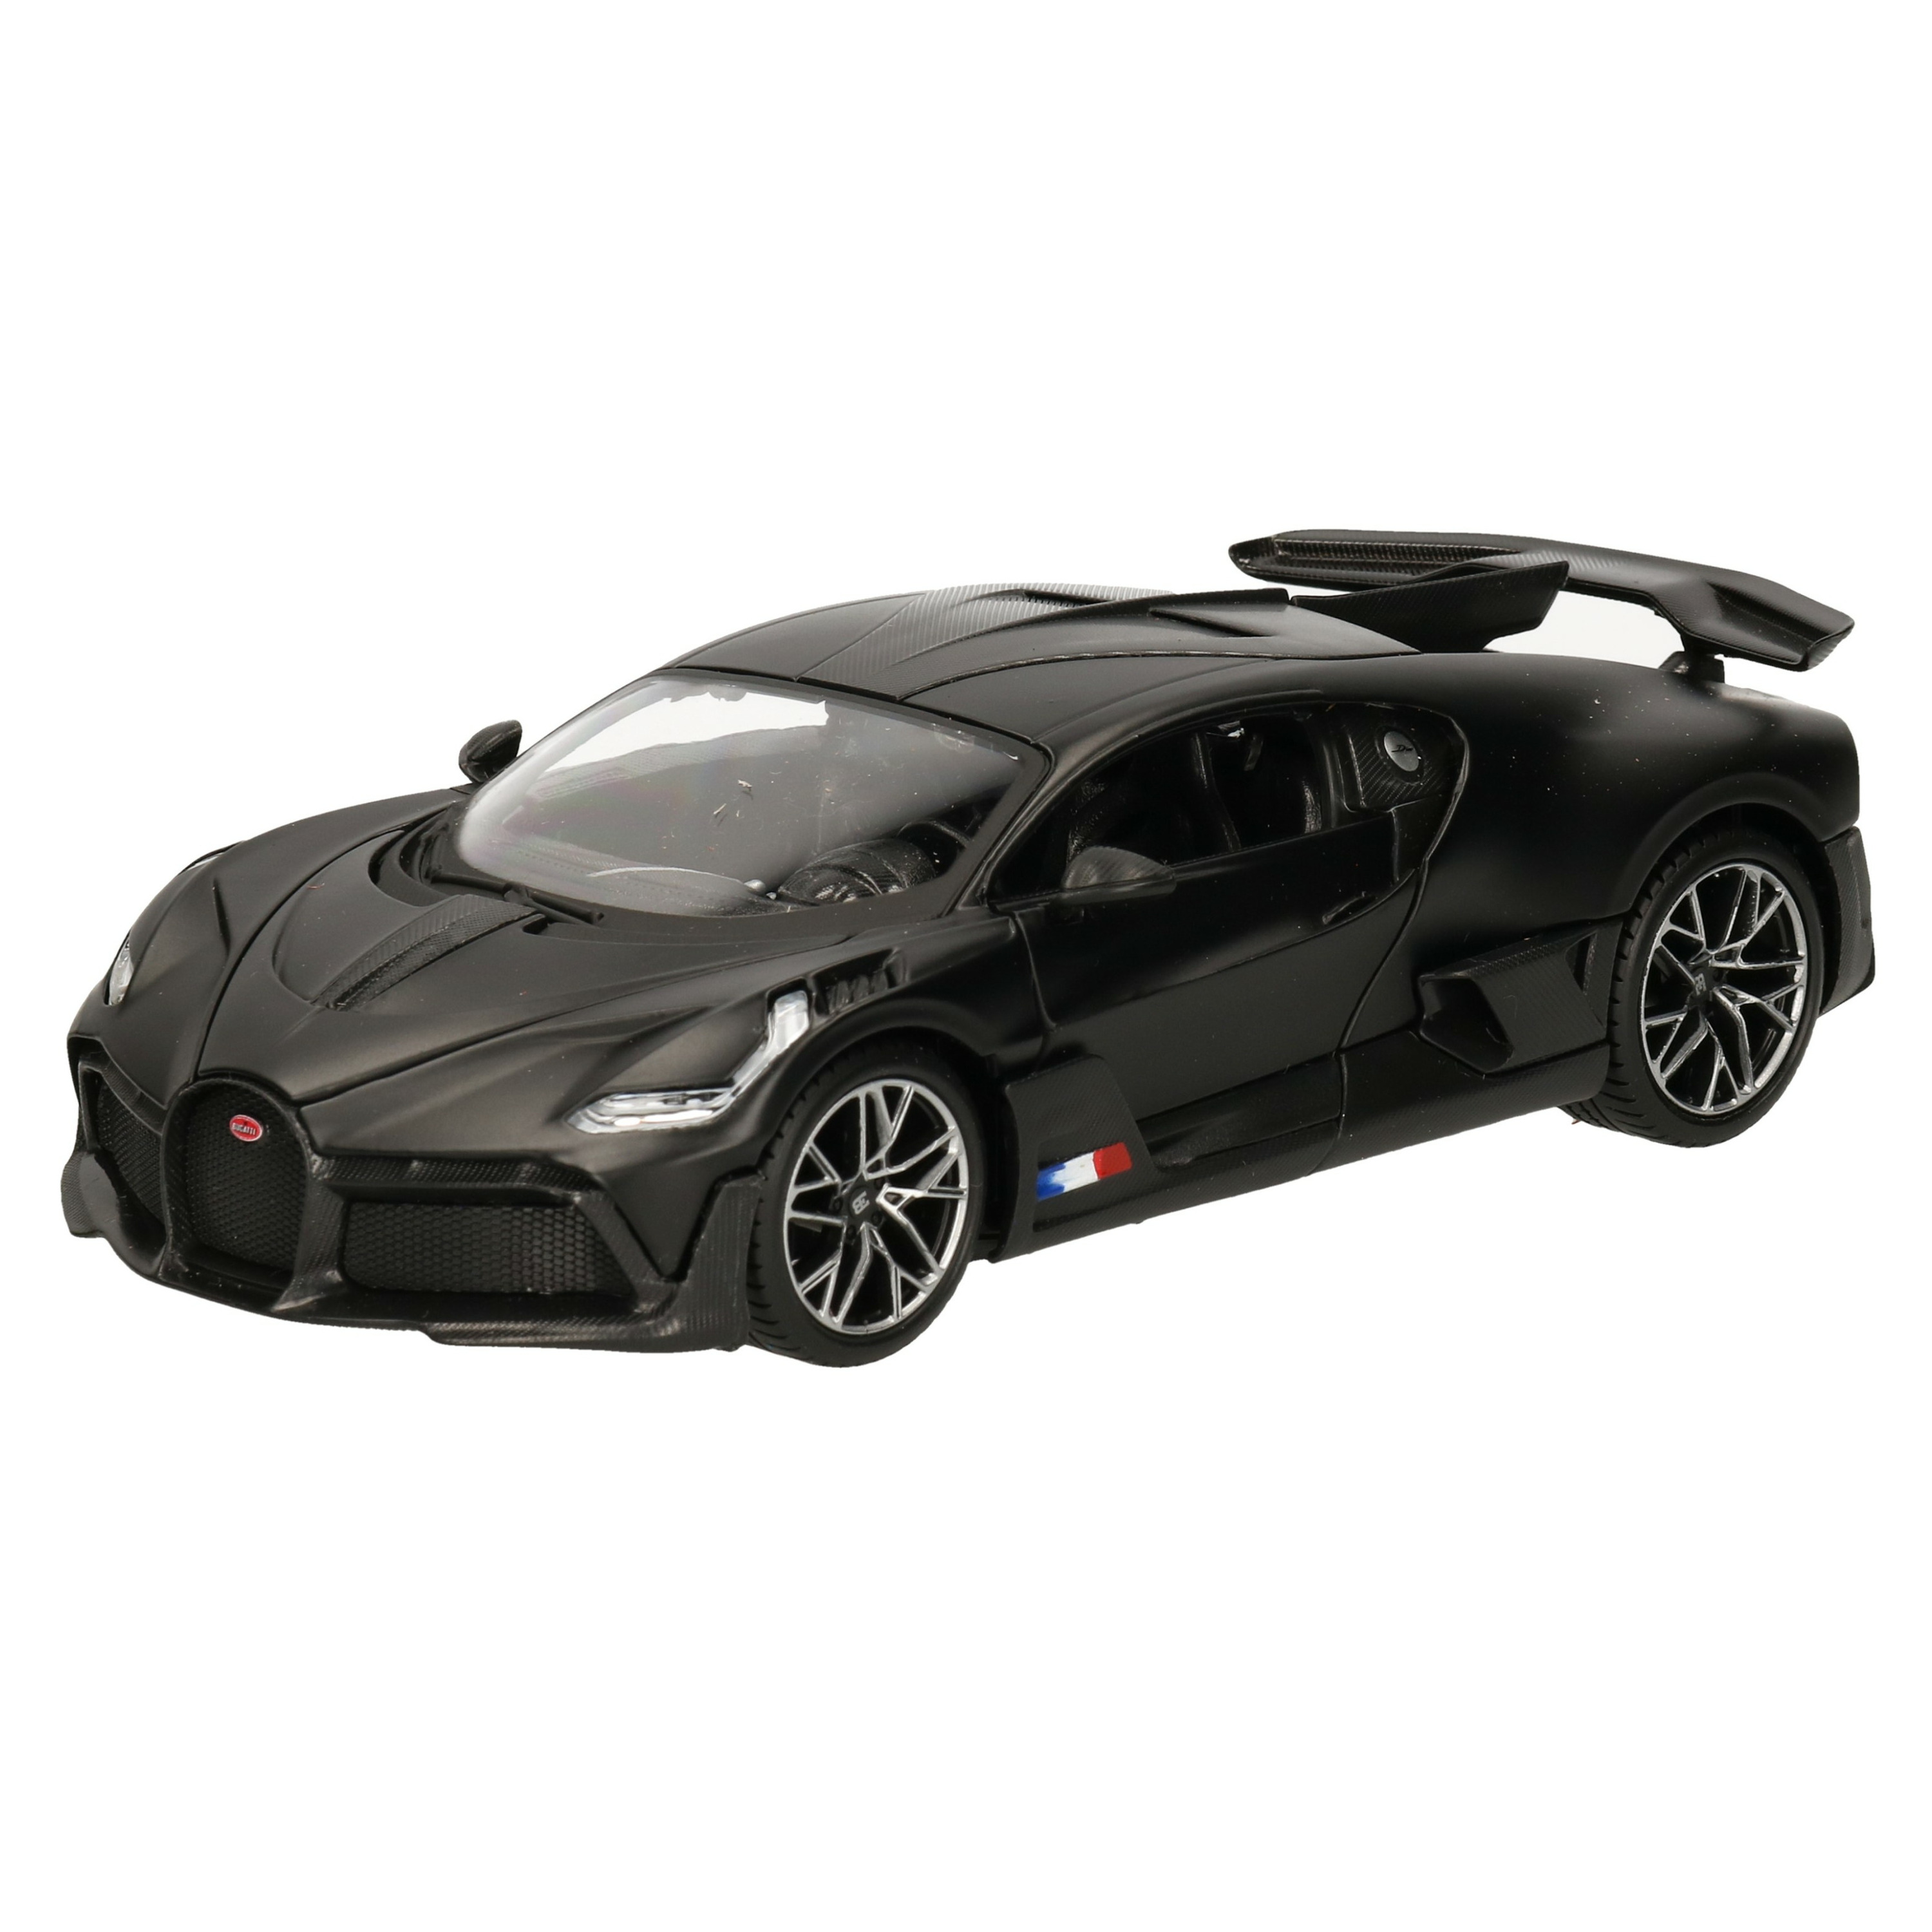 Modelauto-speelgoedauto Bugatti Divo Special Edition schaal 1:24-19 x 8 x 5 cm